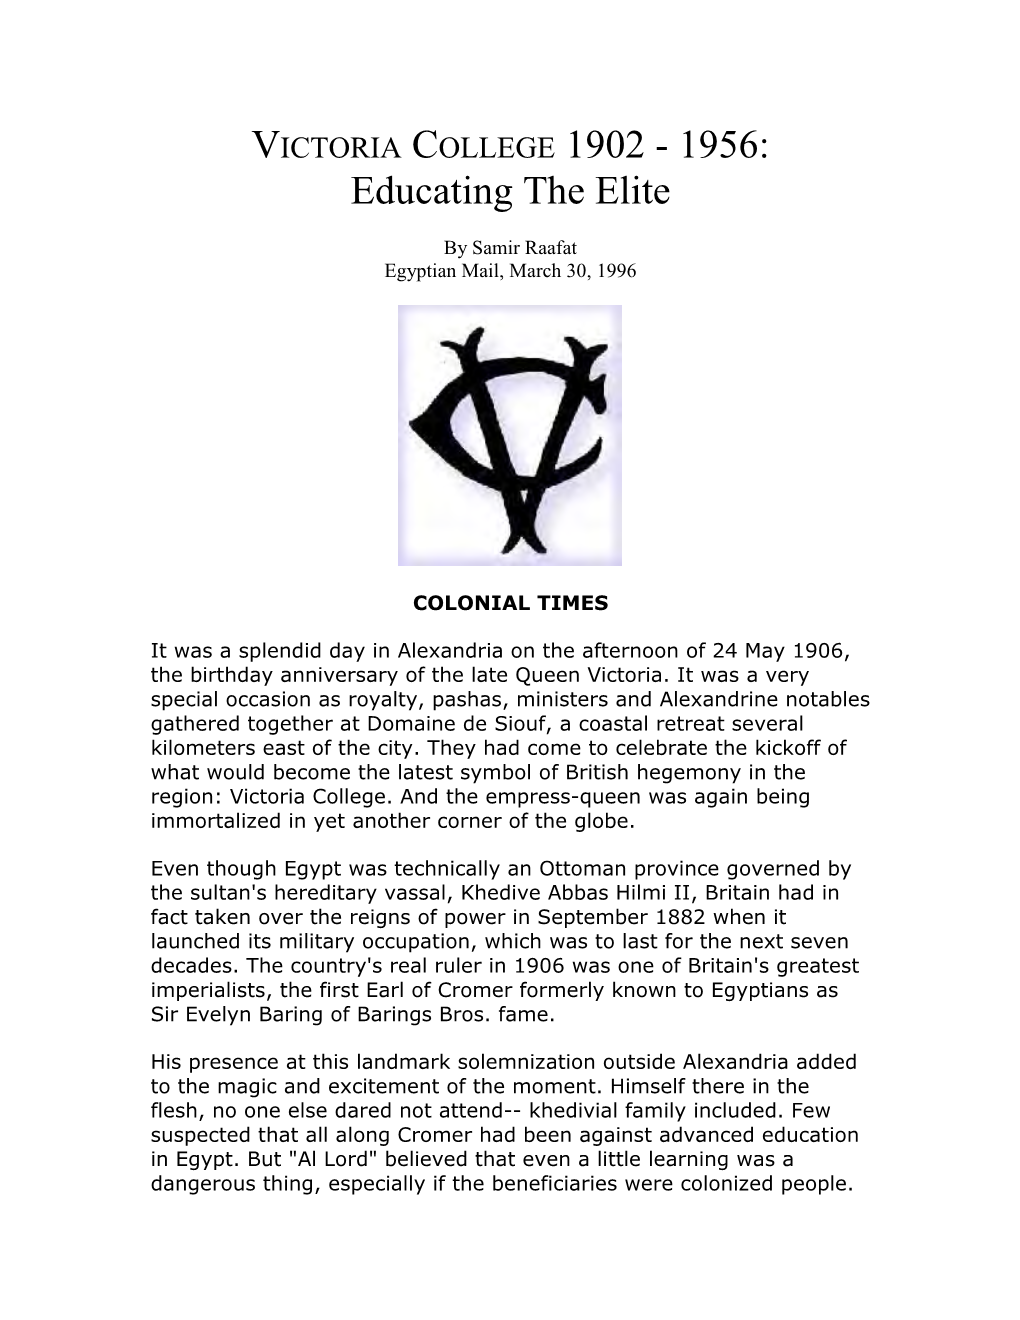 VICTORIA COLLEGE 1902 - 1956: Educating the Elite